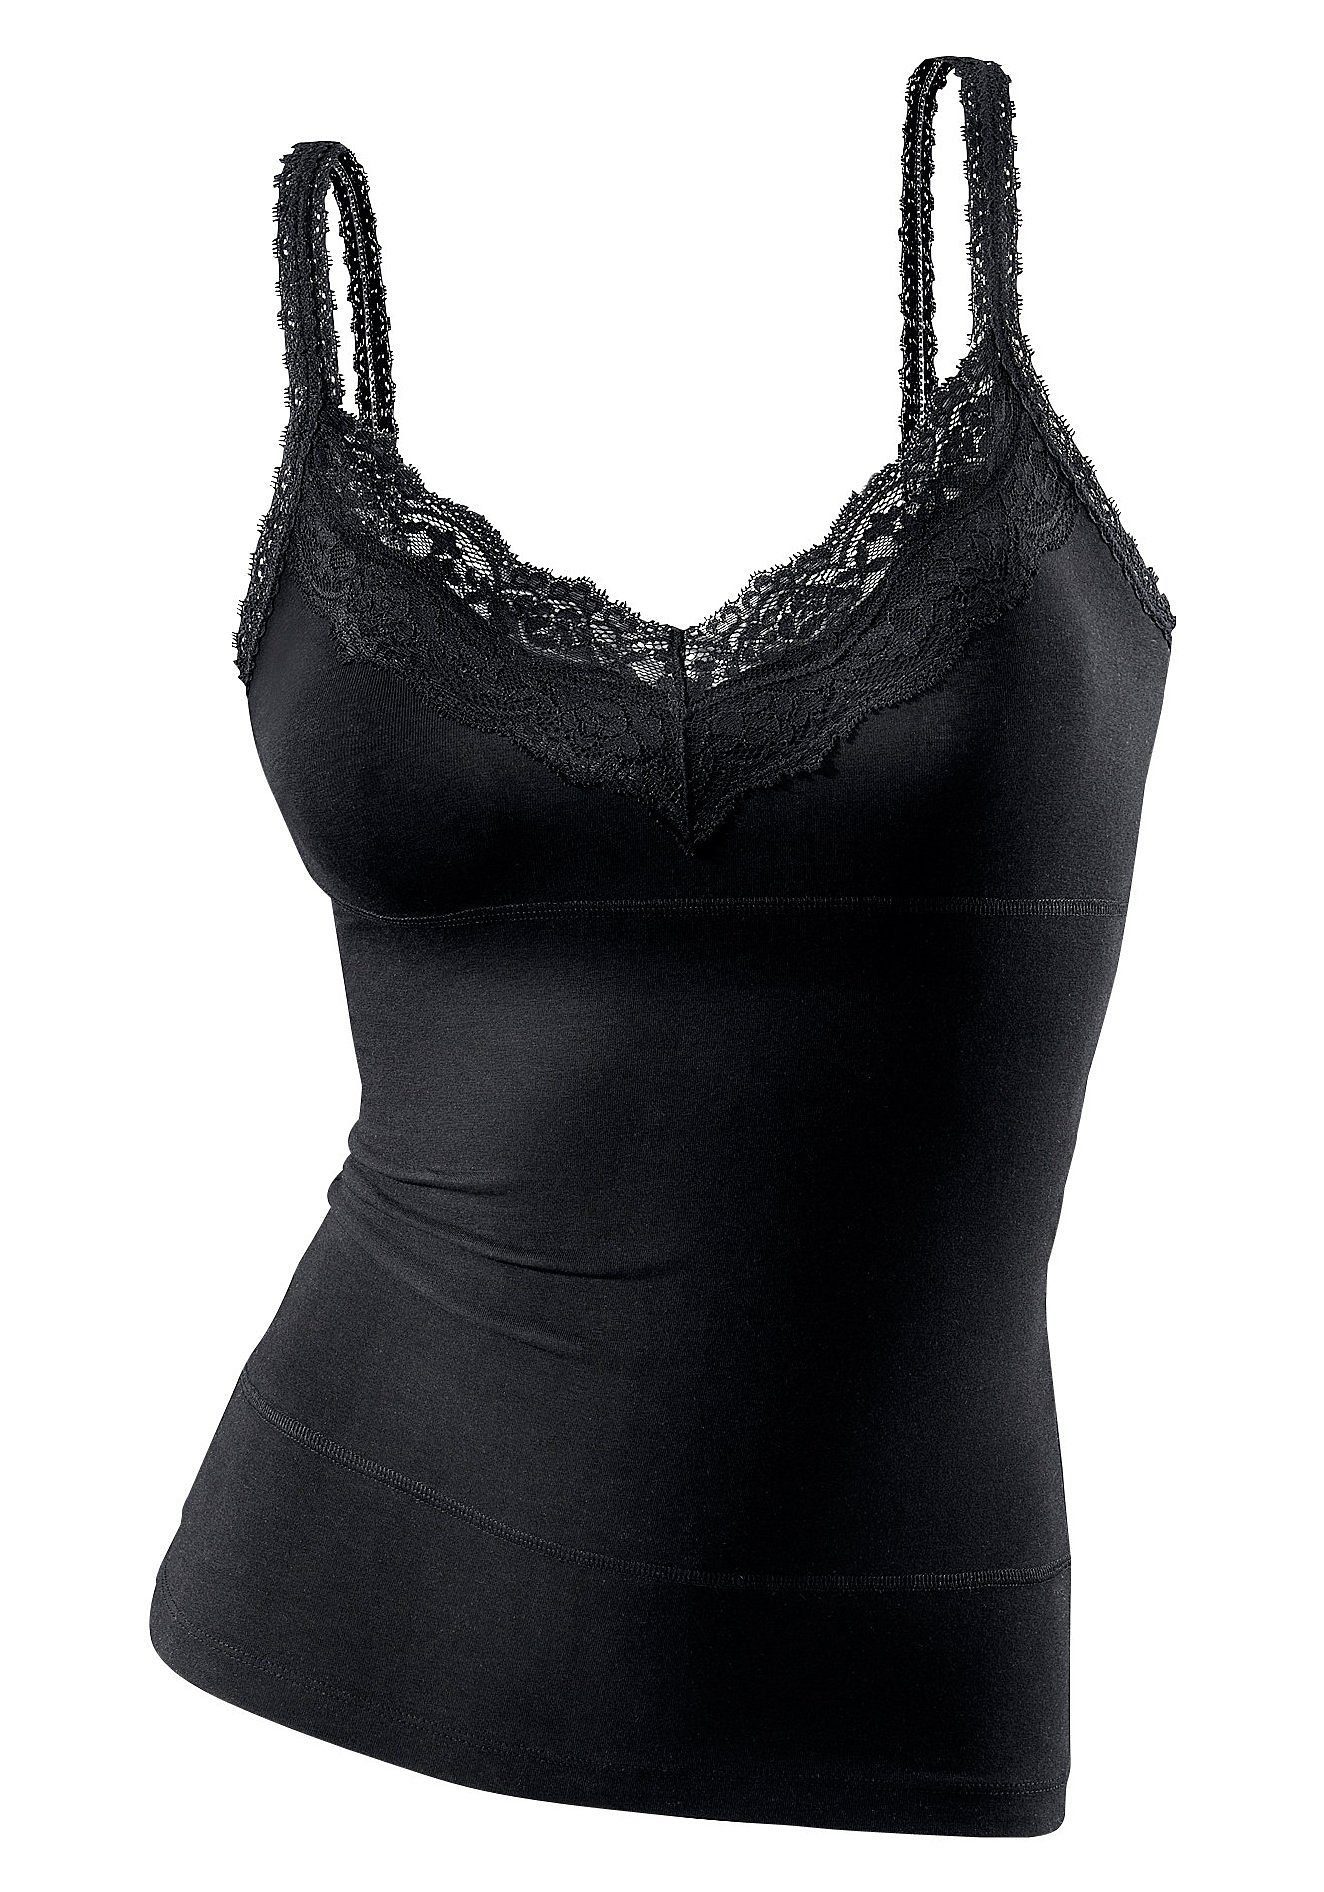 LASCANA elastische Unterhemd Baumwolle, Spaghettiträger-Top schwarz Effekt, mit bodyforming